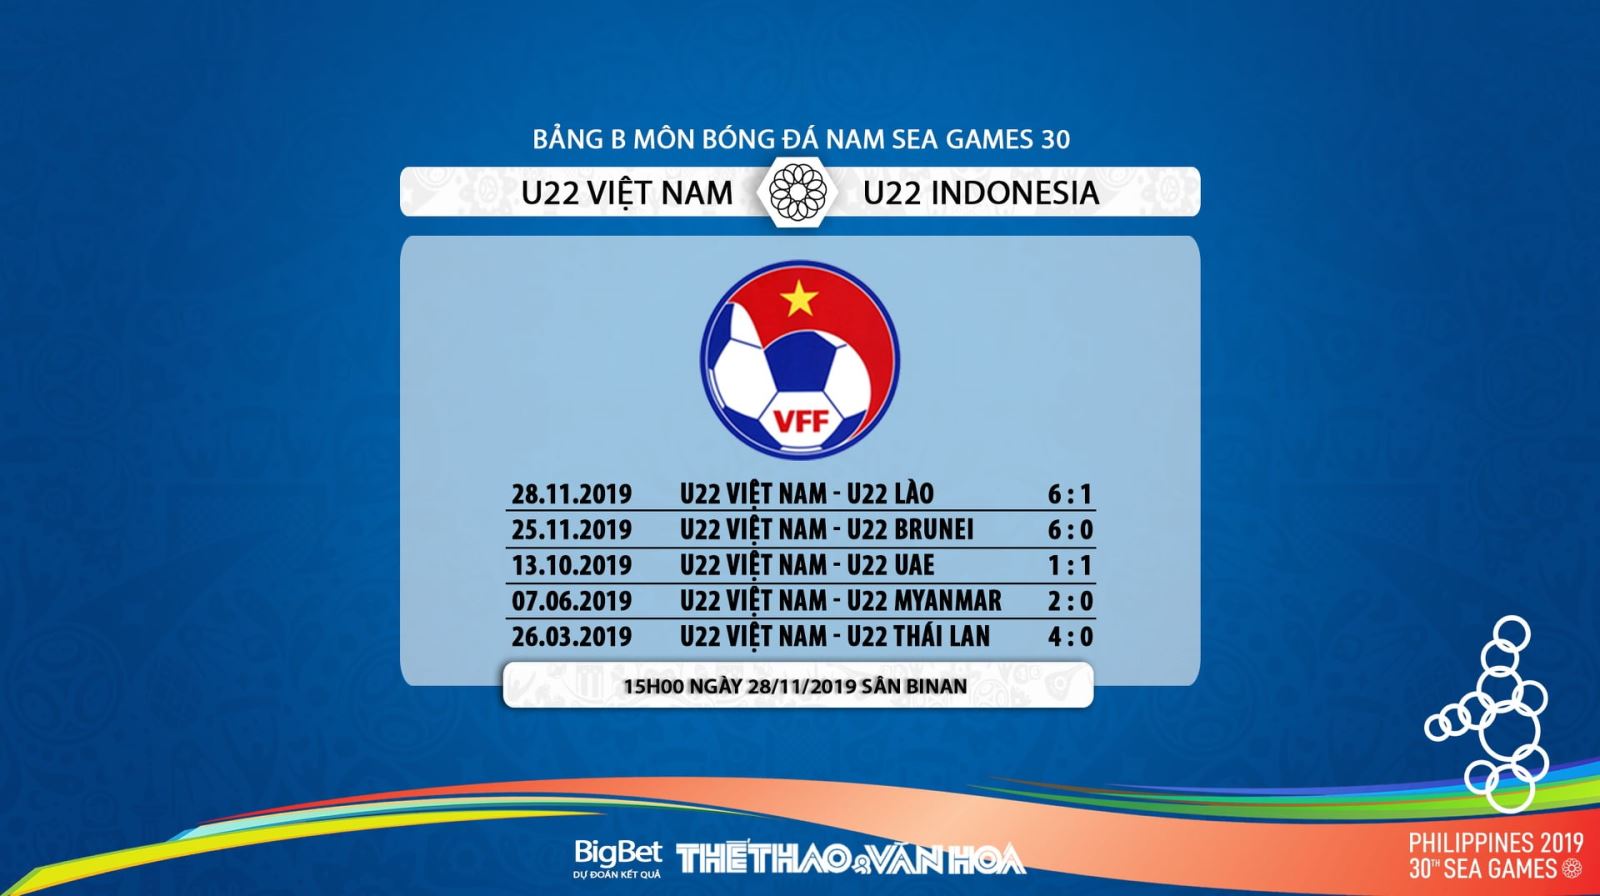 VTC1, VTC3, trực tiếp bóng đá, U22 Việt Nam vs Indonesia, lịch thi đấu SEA Games 30, VTV6, truc tiep bong da, U22 VN vs Indonesia, lịch thi đấu bóng đá SEA Games 2019